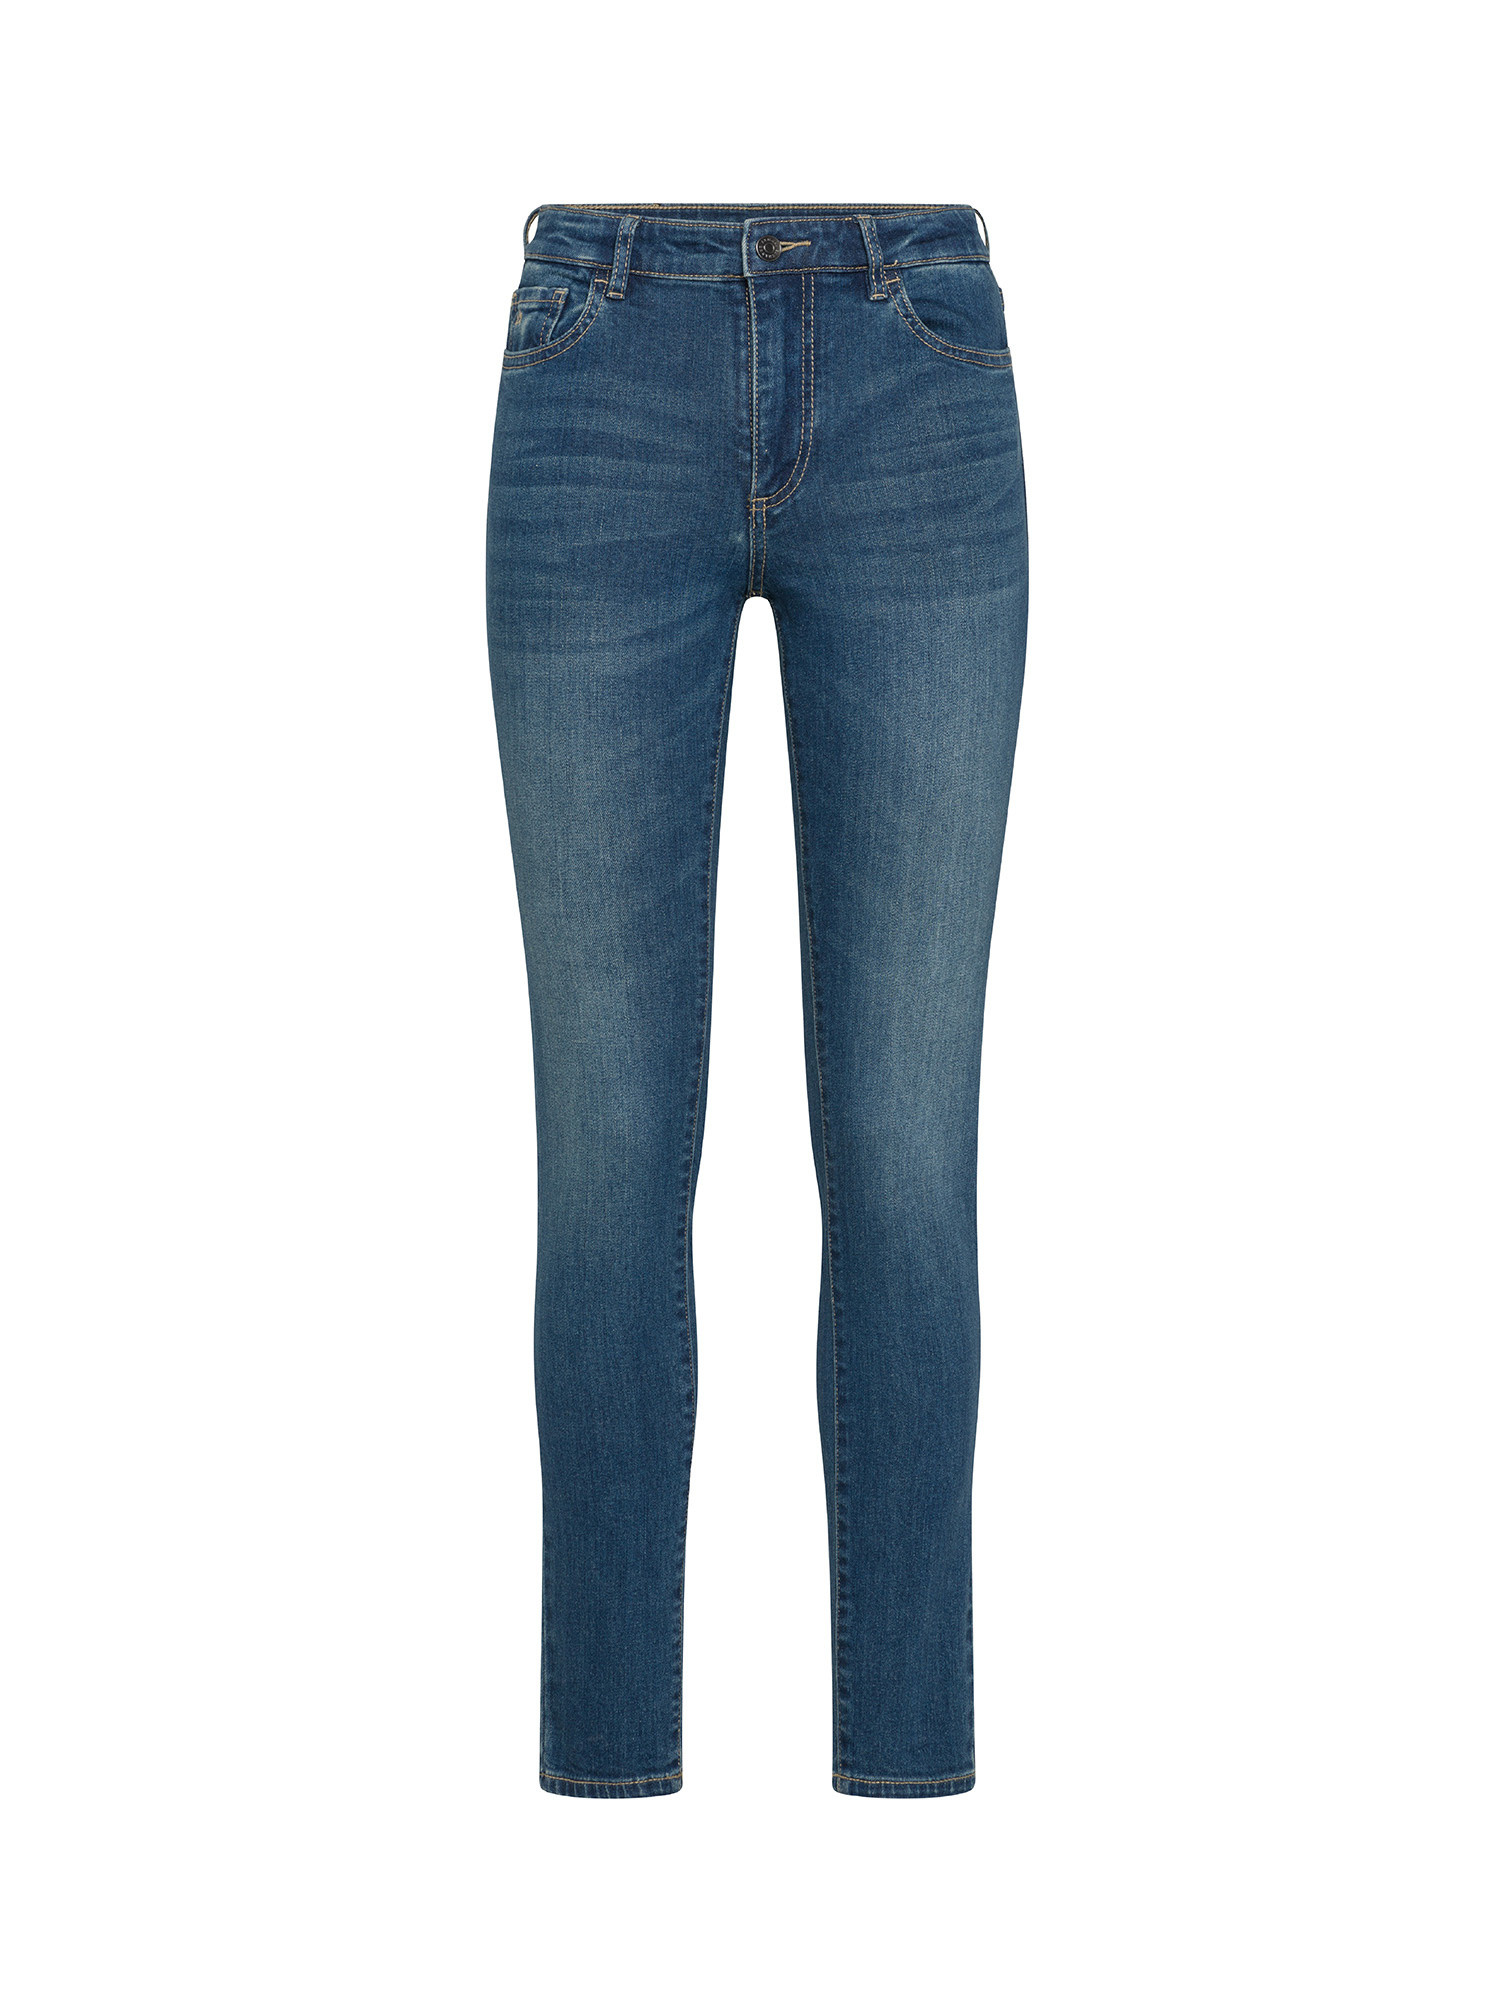 Armani Exchange - Super skinny jeans, Denim, large image number 0